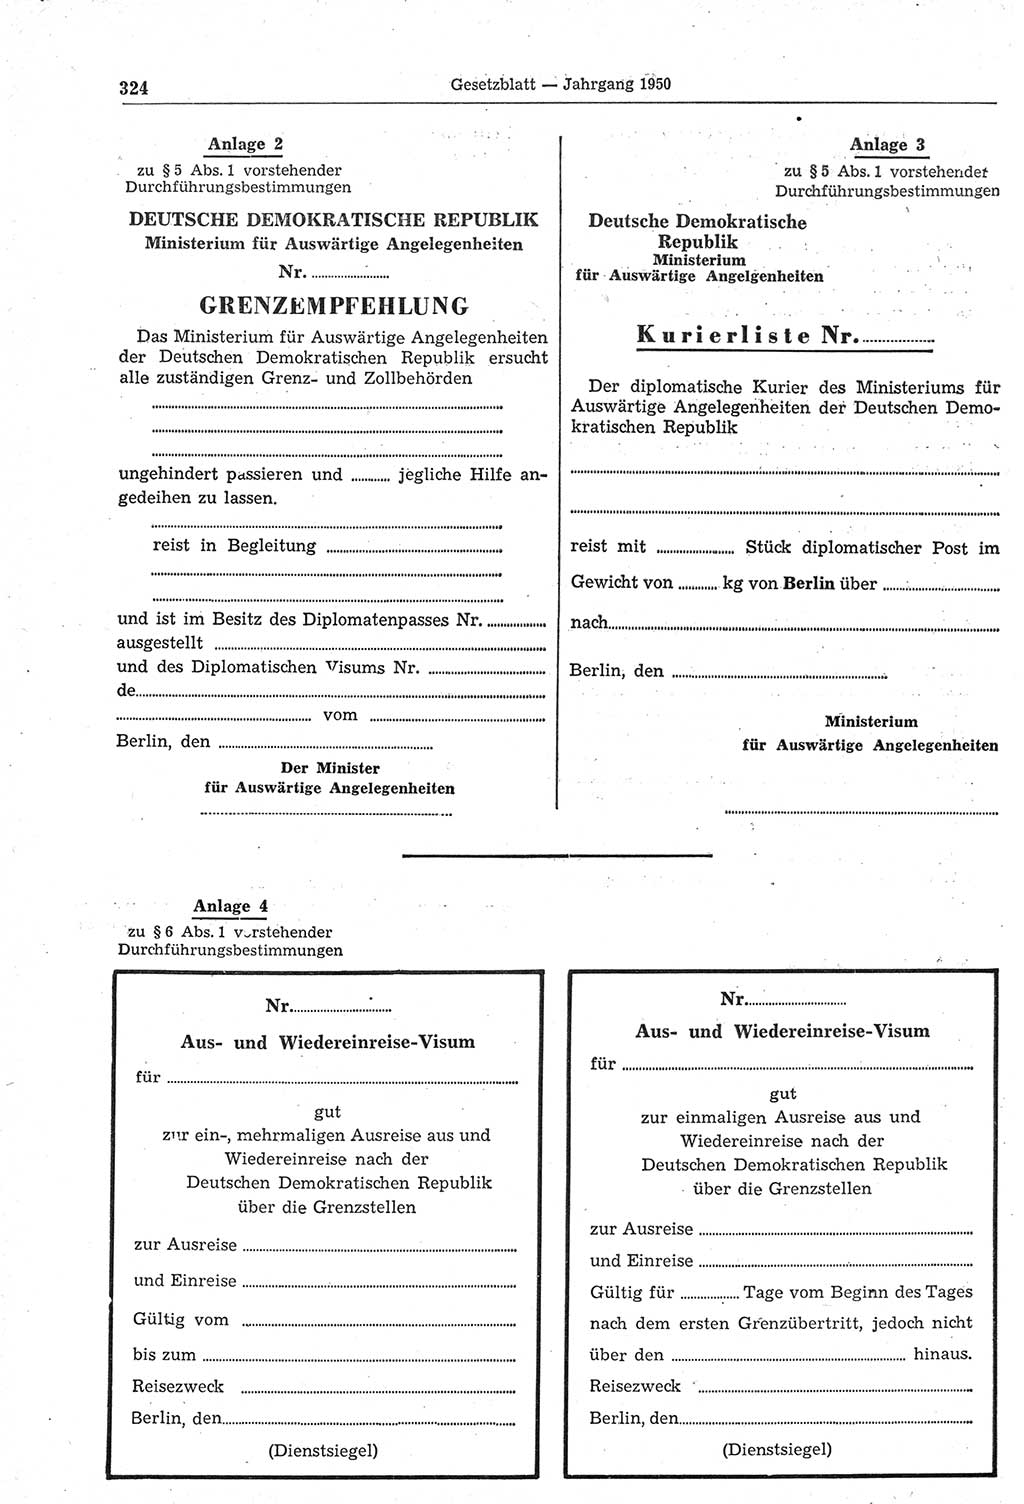 Gesetzblatt (GBl.) der Deutschen Demokratischen Republik (DDR) 1950, Seite 324 (GBl. DDR 1950, S. 324)